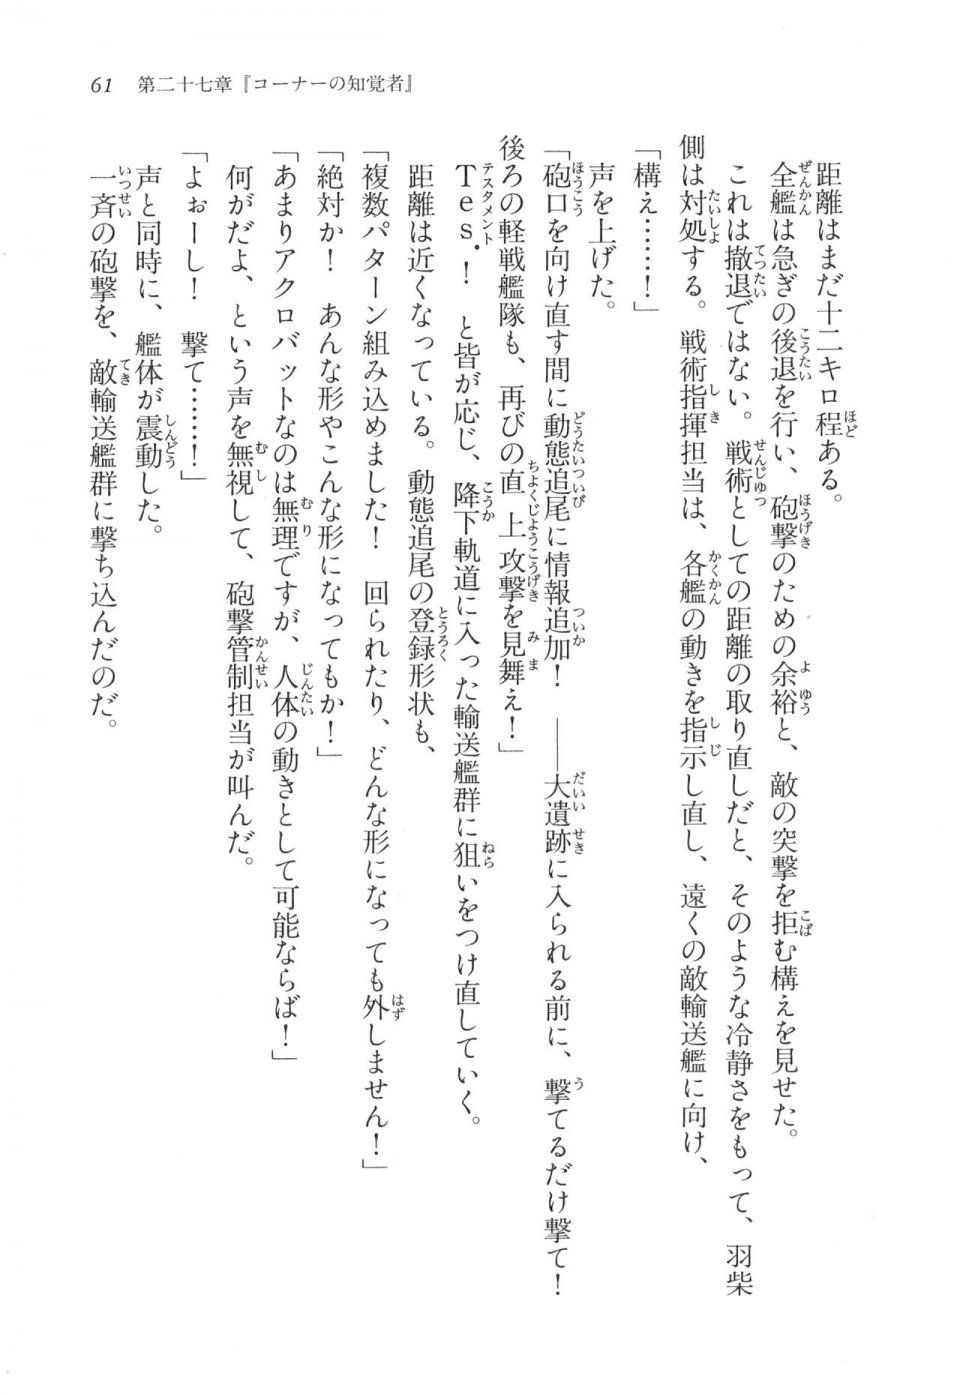 Kyoukai Senjou no Horizon LN Vol 17(7B) - Photo #61